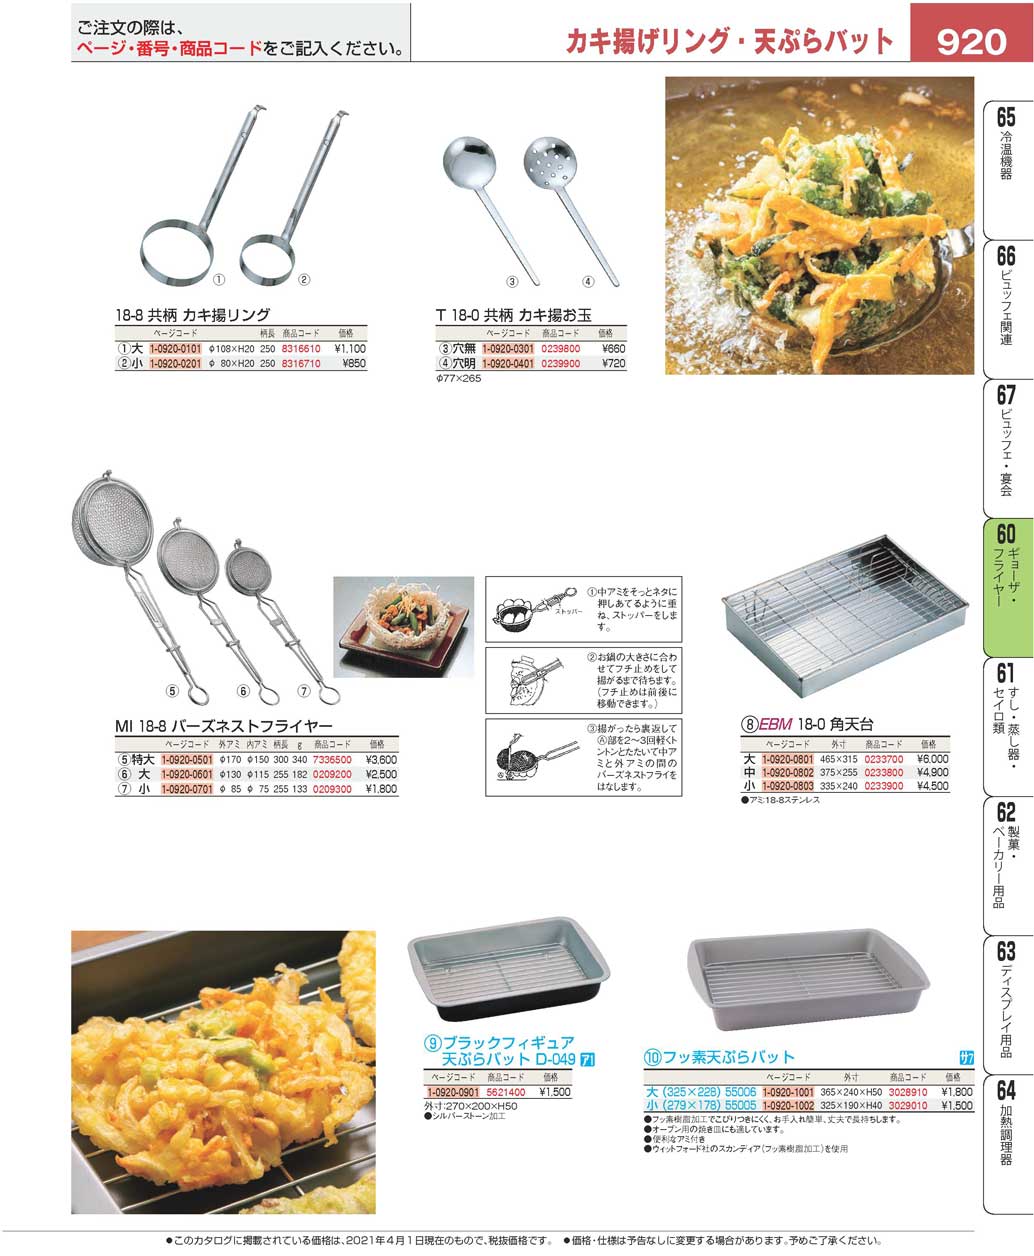 食器 かき揚げリング・天ぷらバットCooking tools for fried food プロフェッショナルベストコレクション２１  ＥＢＭ－920ページ